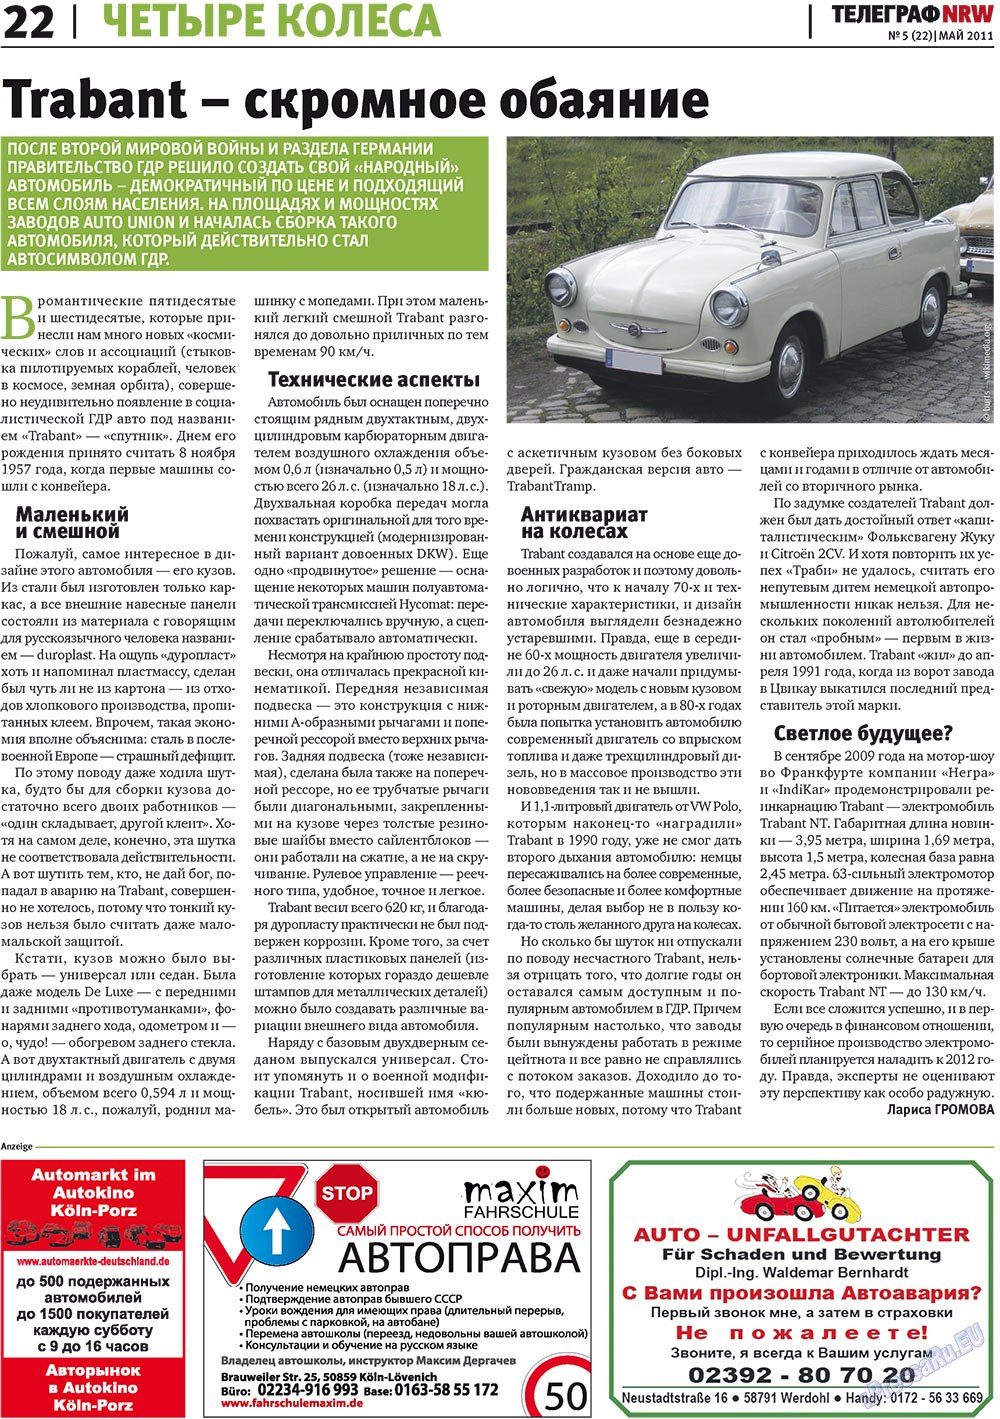 Телеграф NRW (газета). 2011 год, номер 5, стр. 22